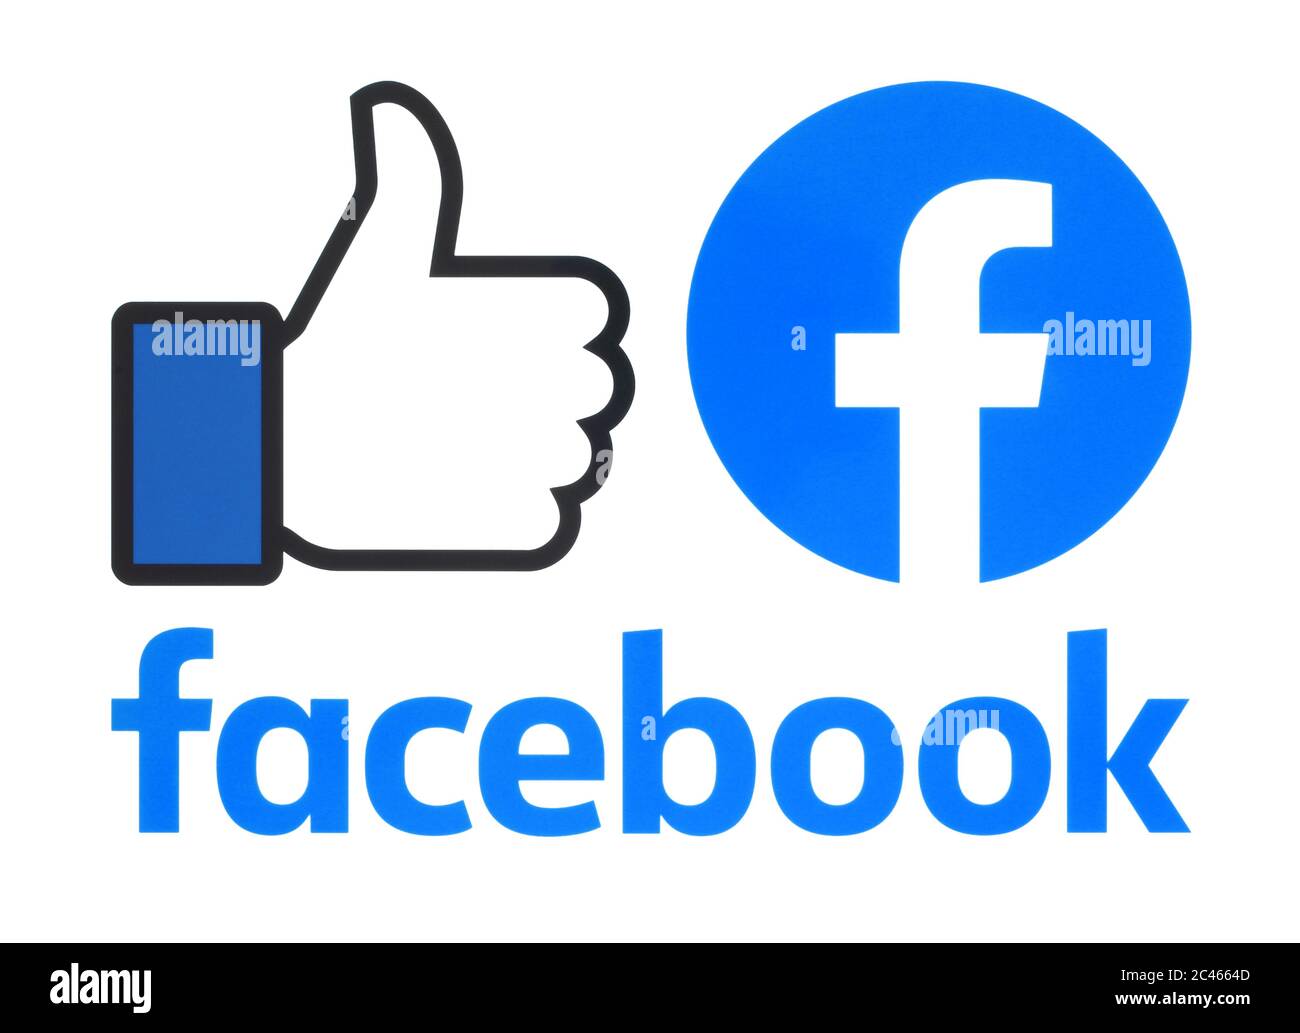 Kiew, Ukraine - 02. Mai 2019: Sammlung eines neuen Facebook-Logos auf weißem Papier gedruckt. Facebook ist ein bekannter Dienst für soziale Netzwerke Stockfoto